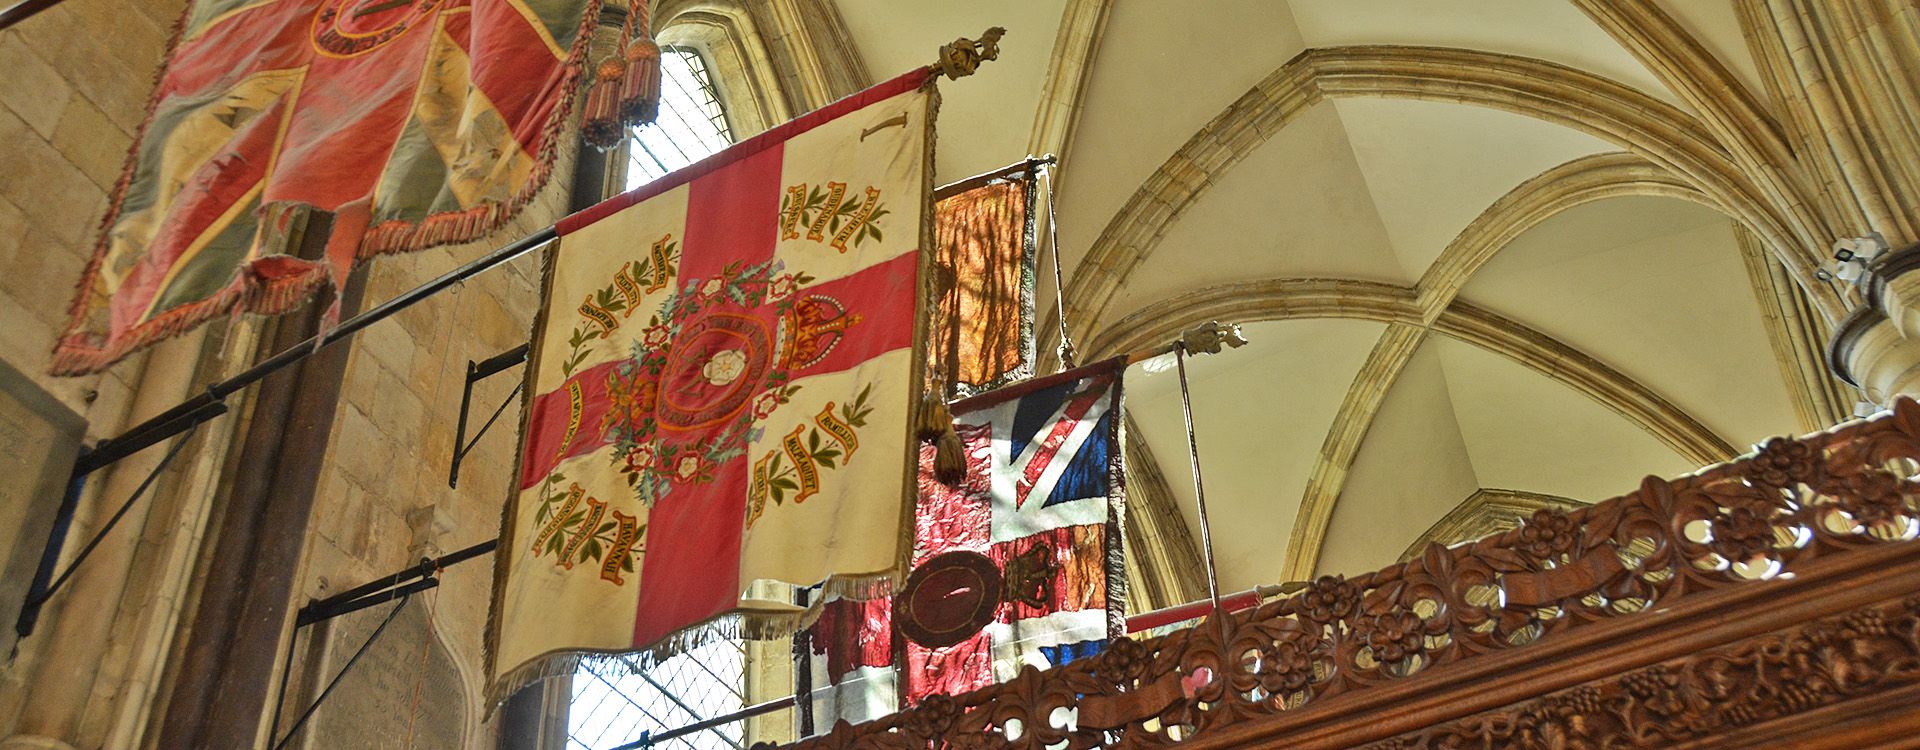 Regimental standards hang above chapels in Beverley Minster's South Transept.